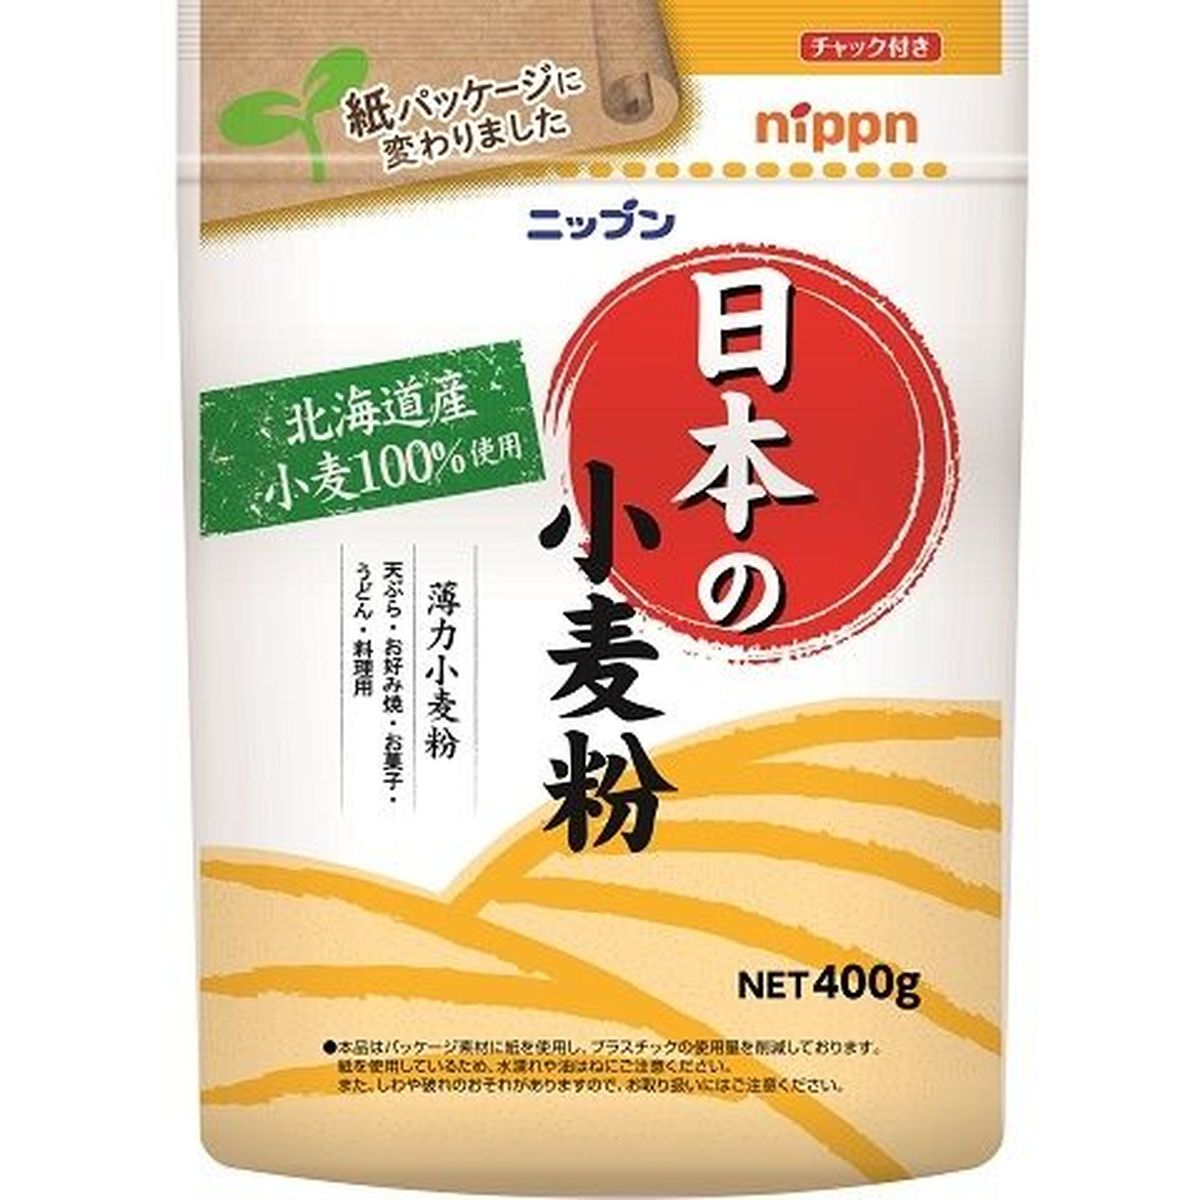 【12個入リ】日本製粉 ニップン 日本ノ小麦粉 400g